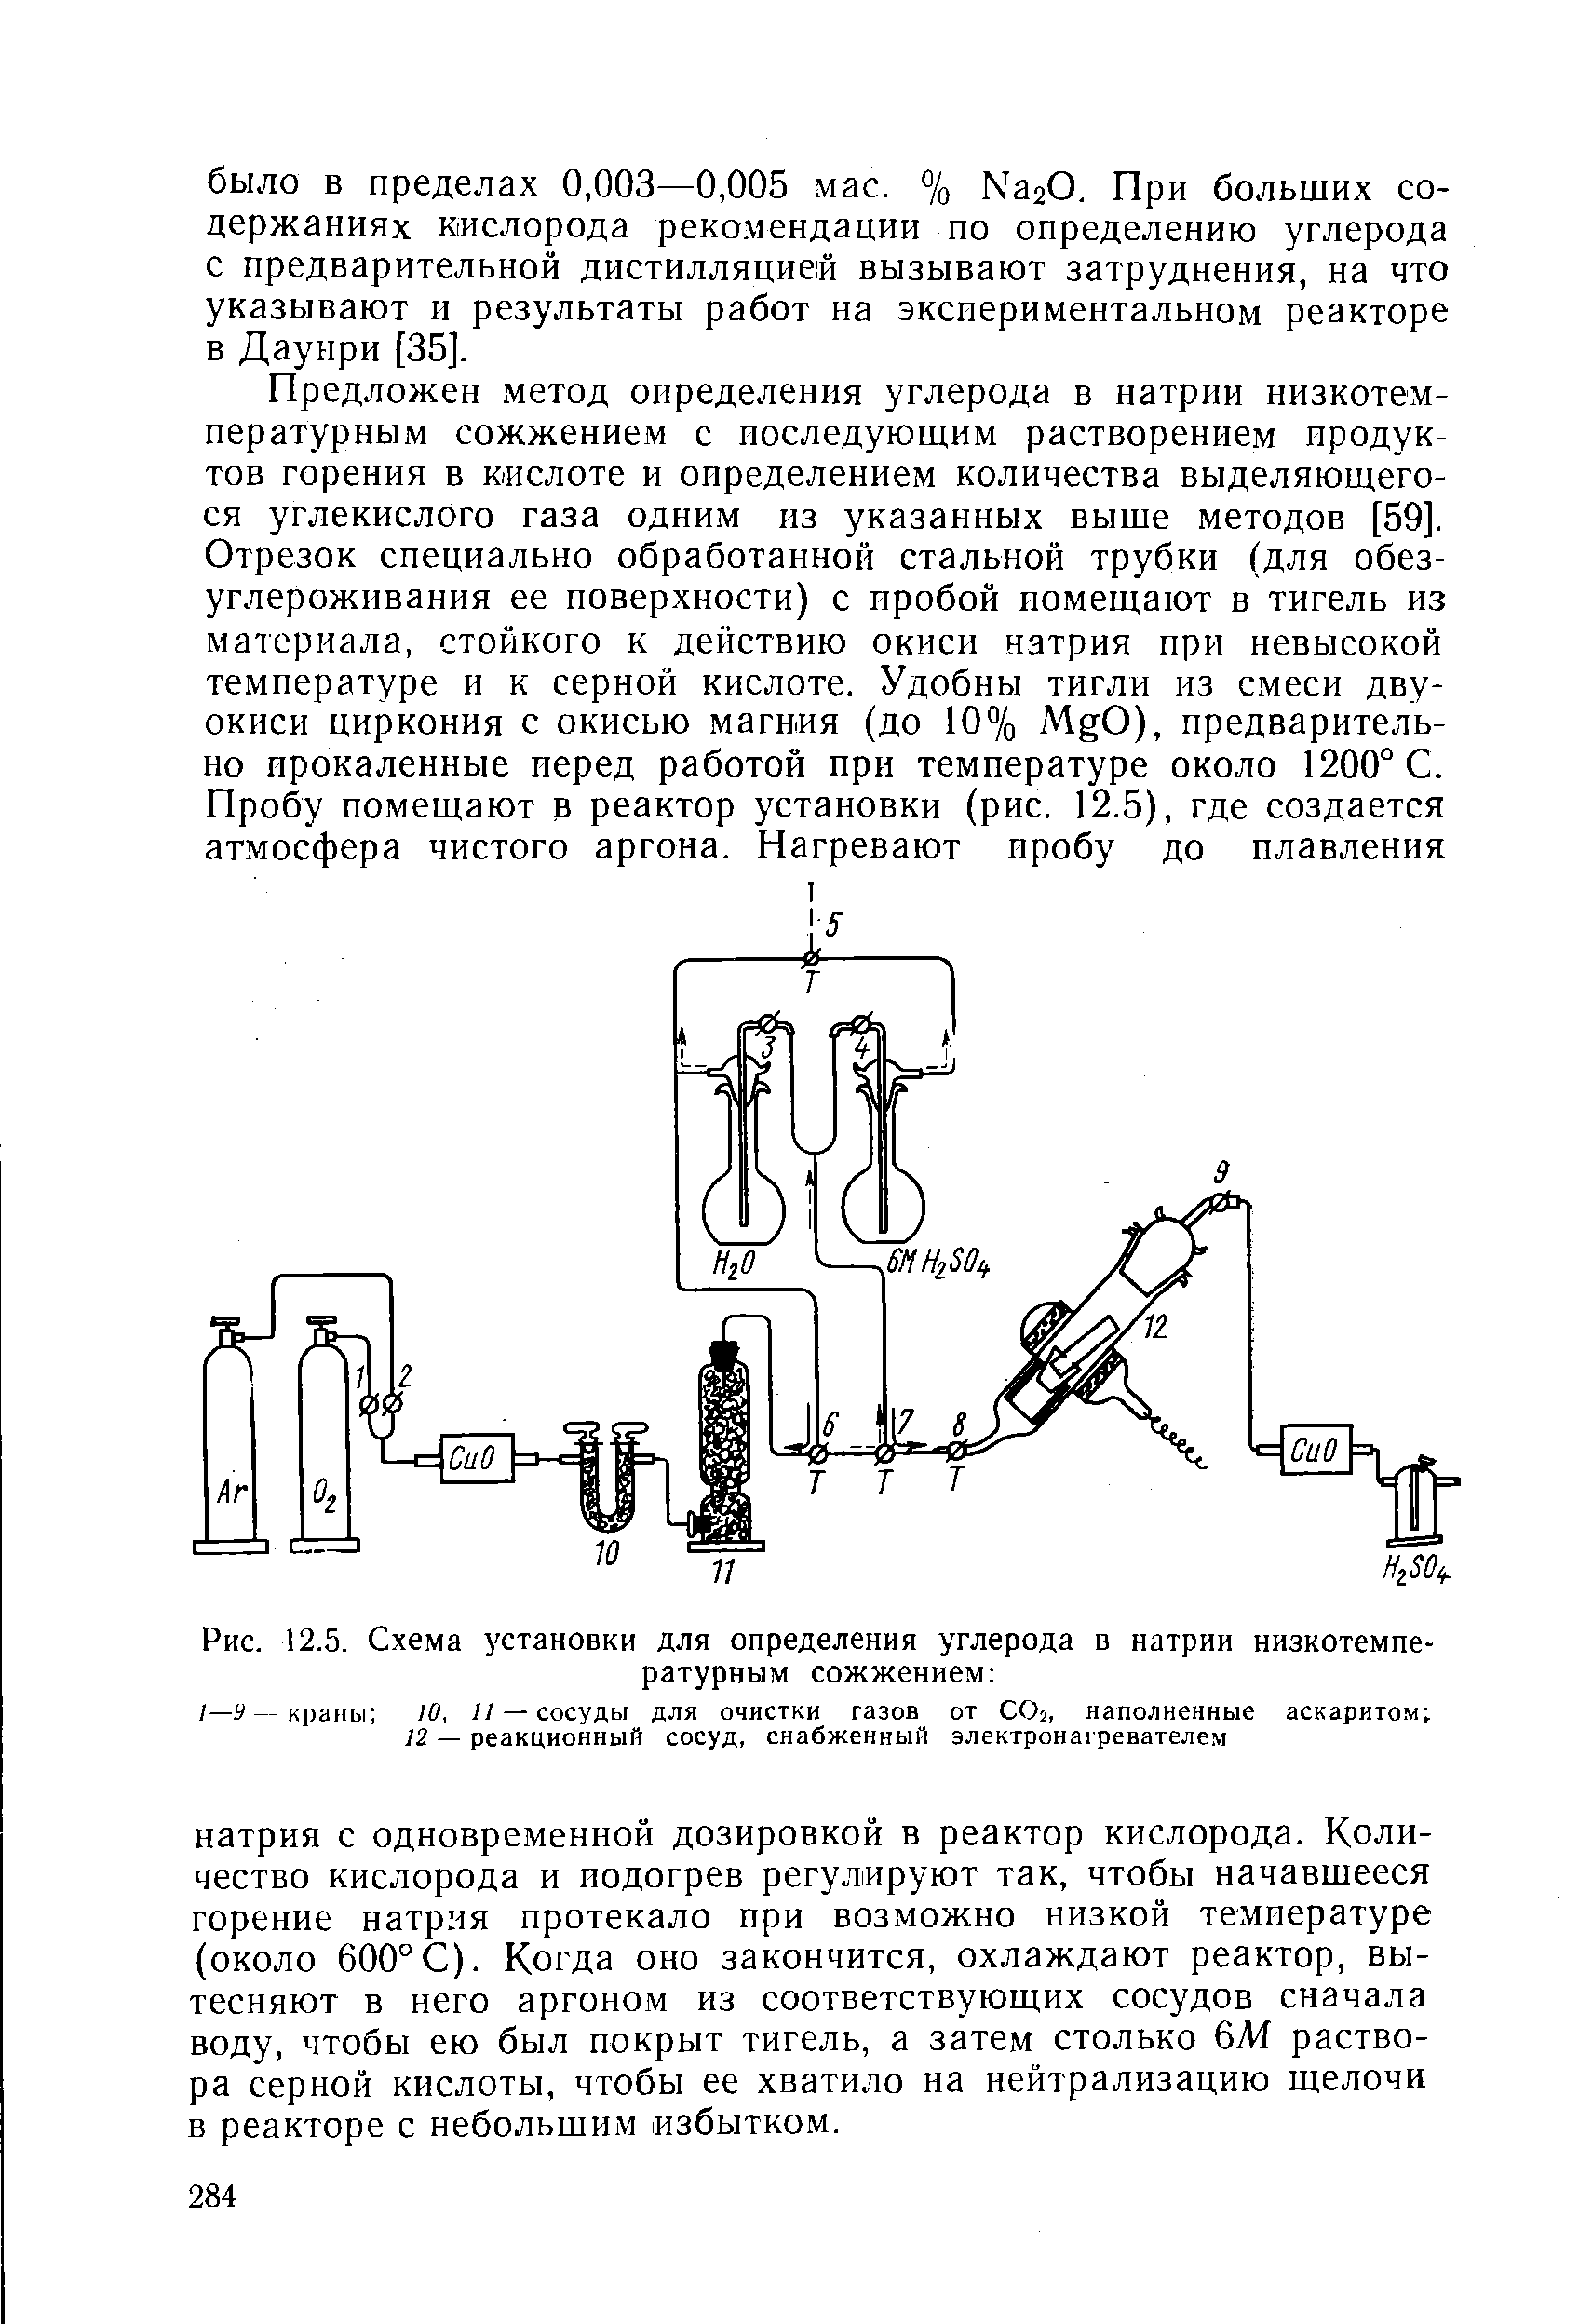 Рис. 12.5. Схема установки для определения углерода в натрии низкотемпературным сожжением 
